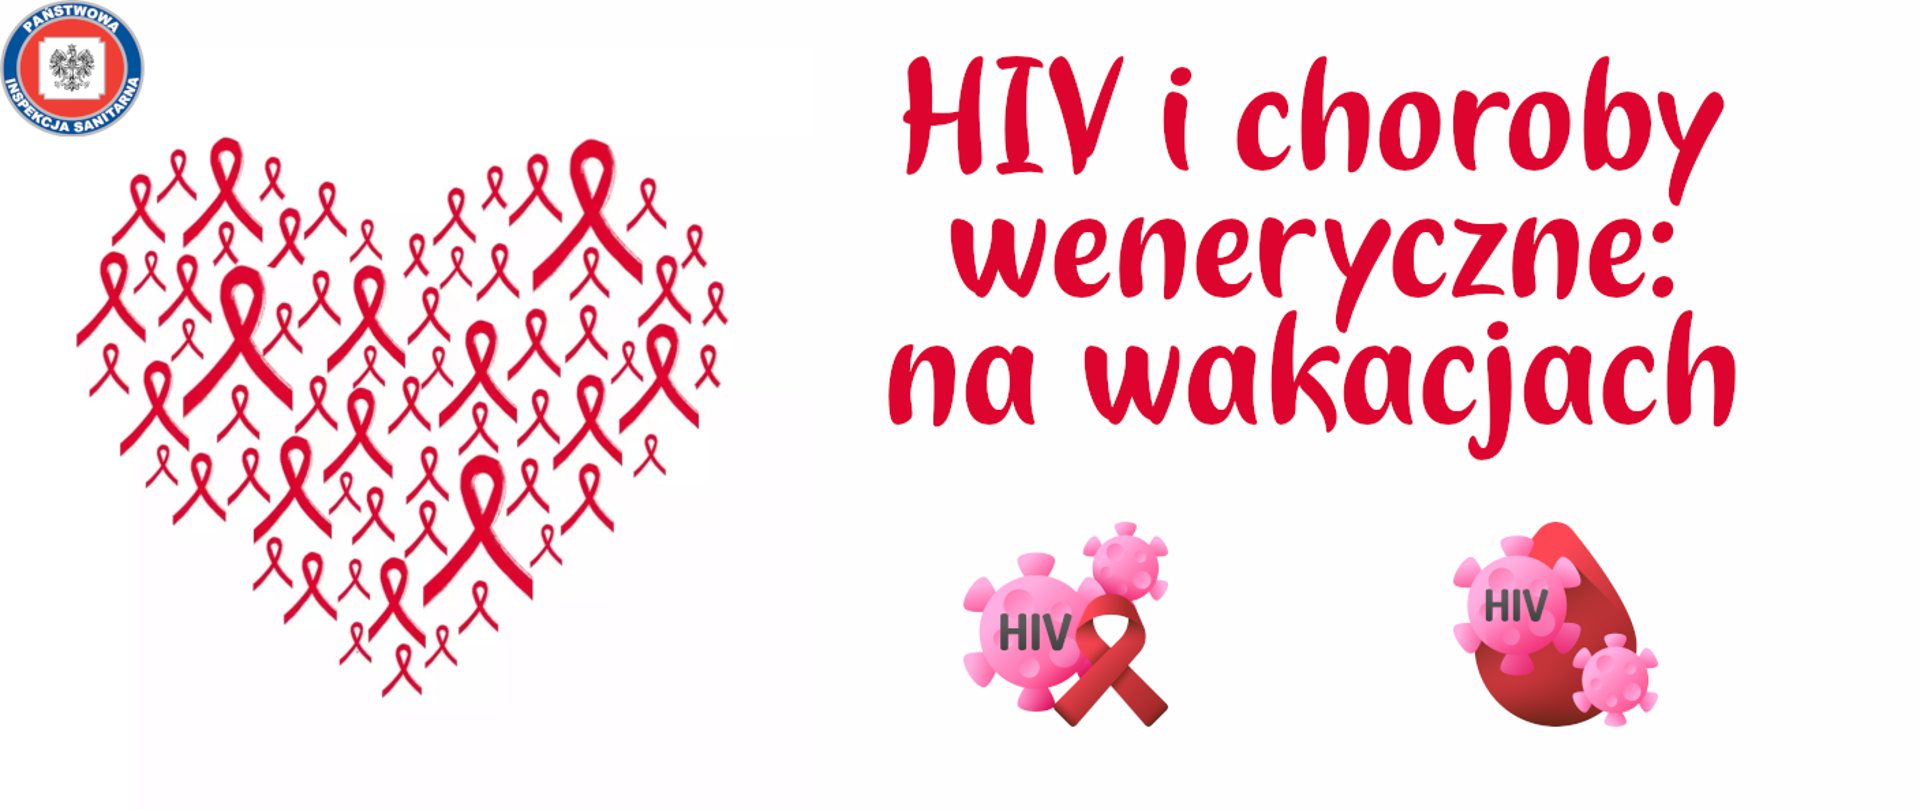 HIV i choroby weneryczne - na wakacjach